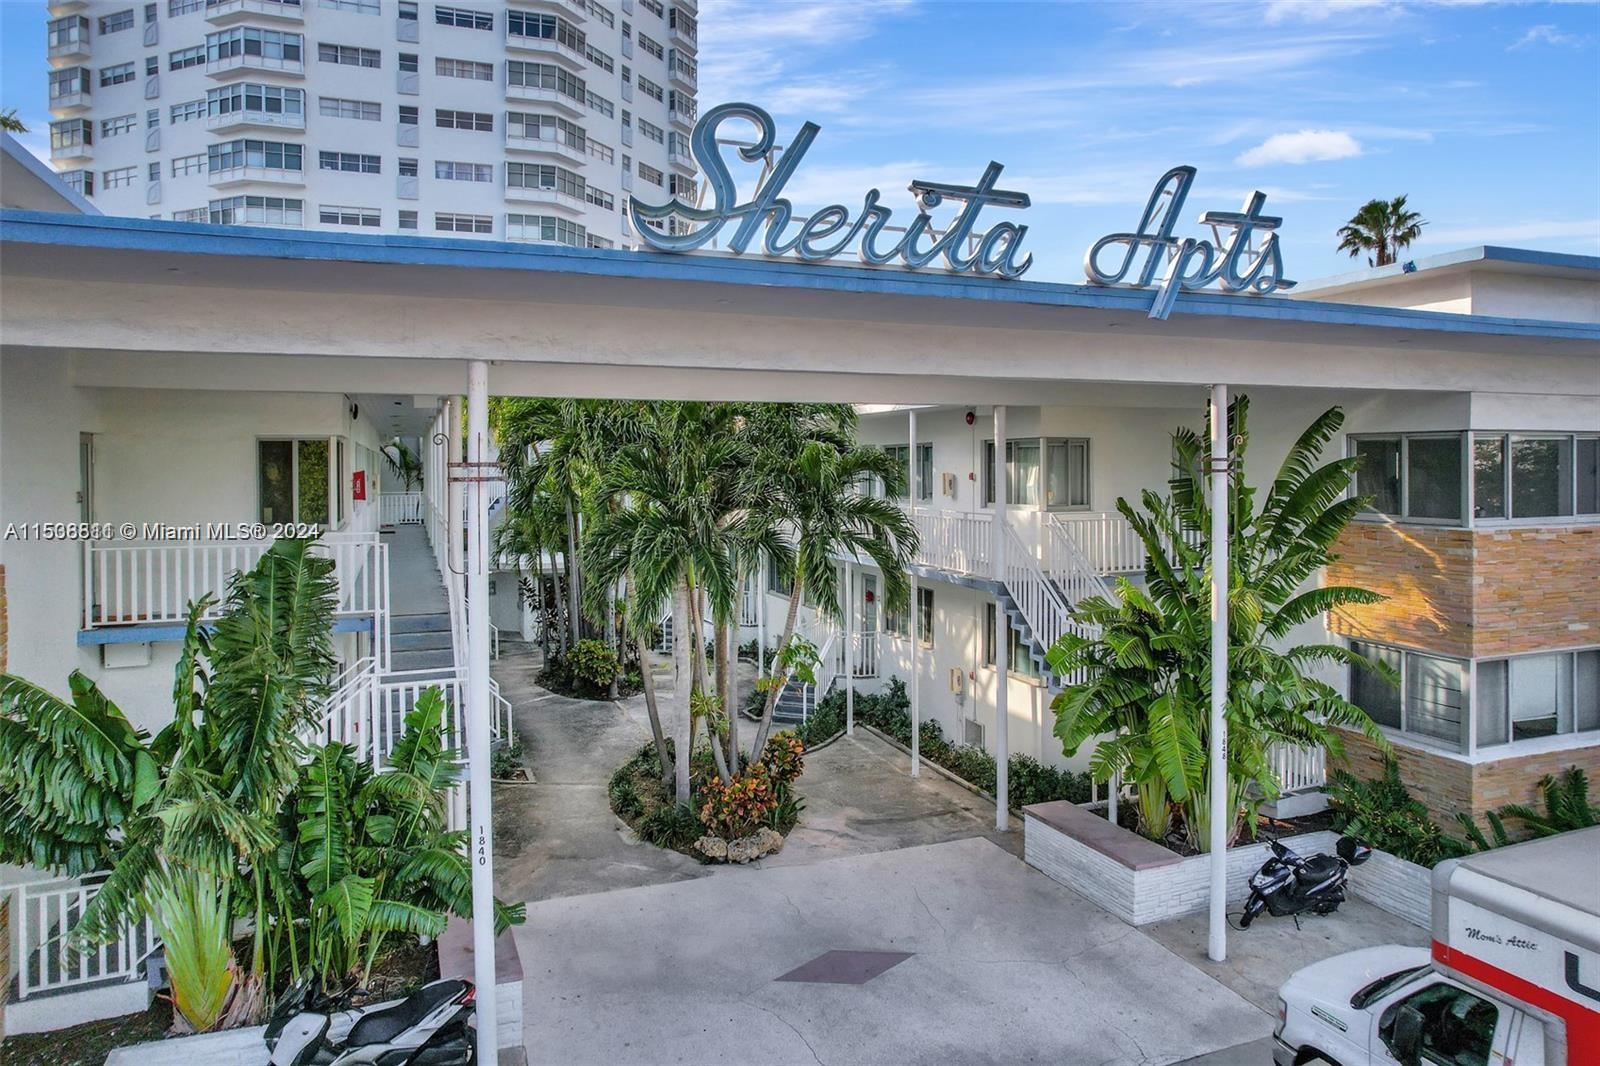 Rental Property at 1840 James Ave 13, Miami Beach, Miami-Dade County, Florida - Bedrooms: 1 
Bathrooms: 1  - $2,390 MO.